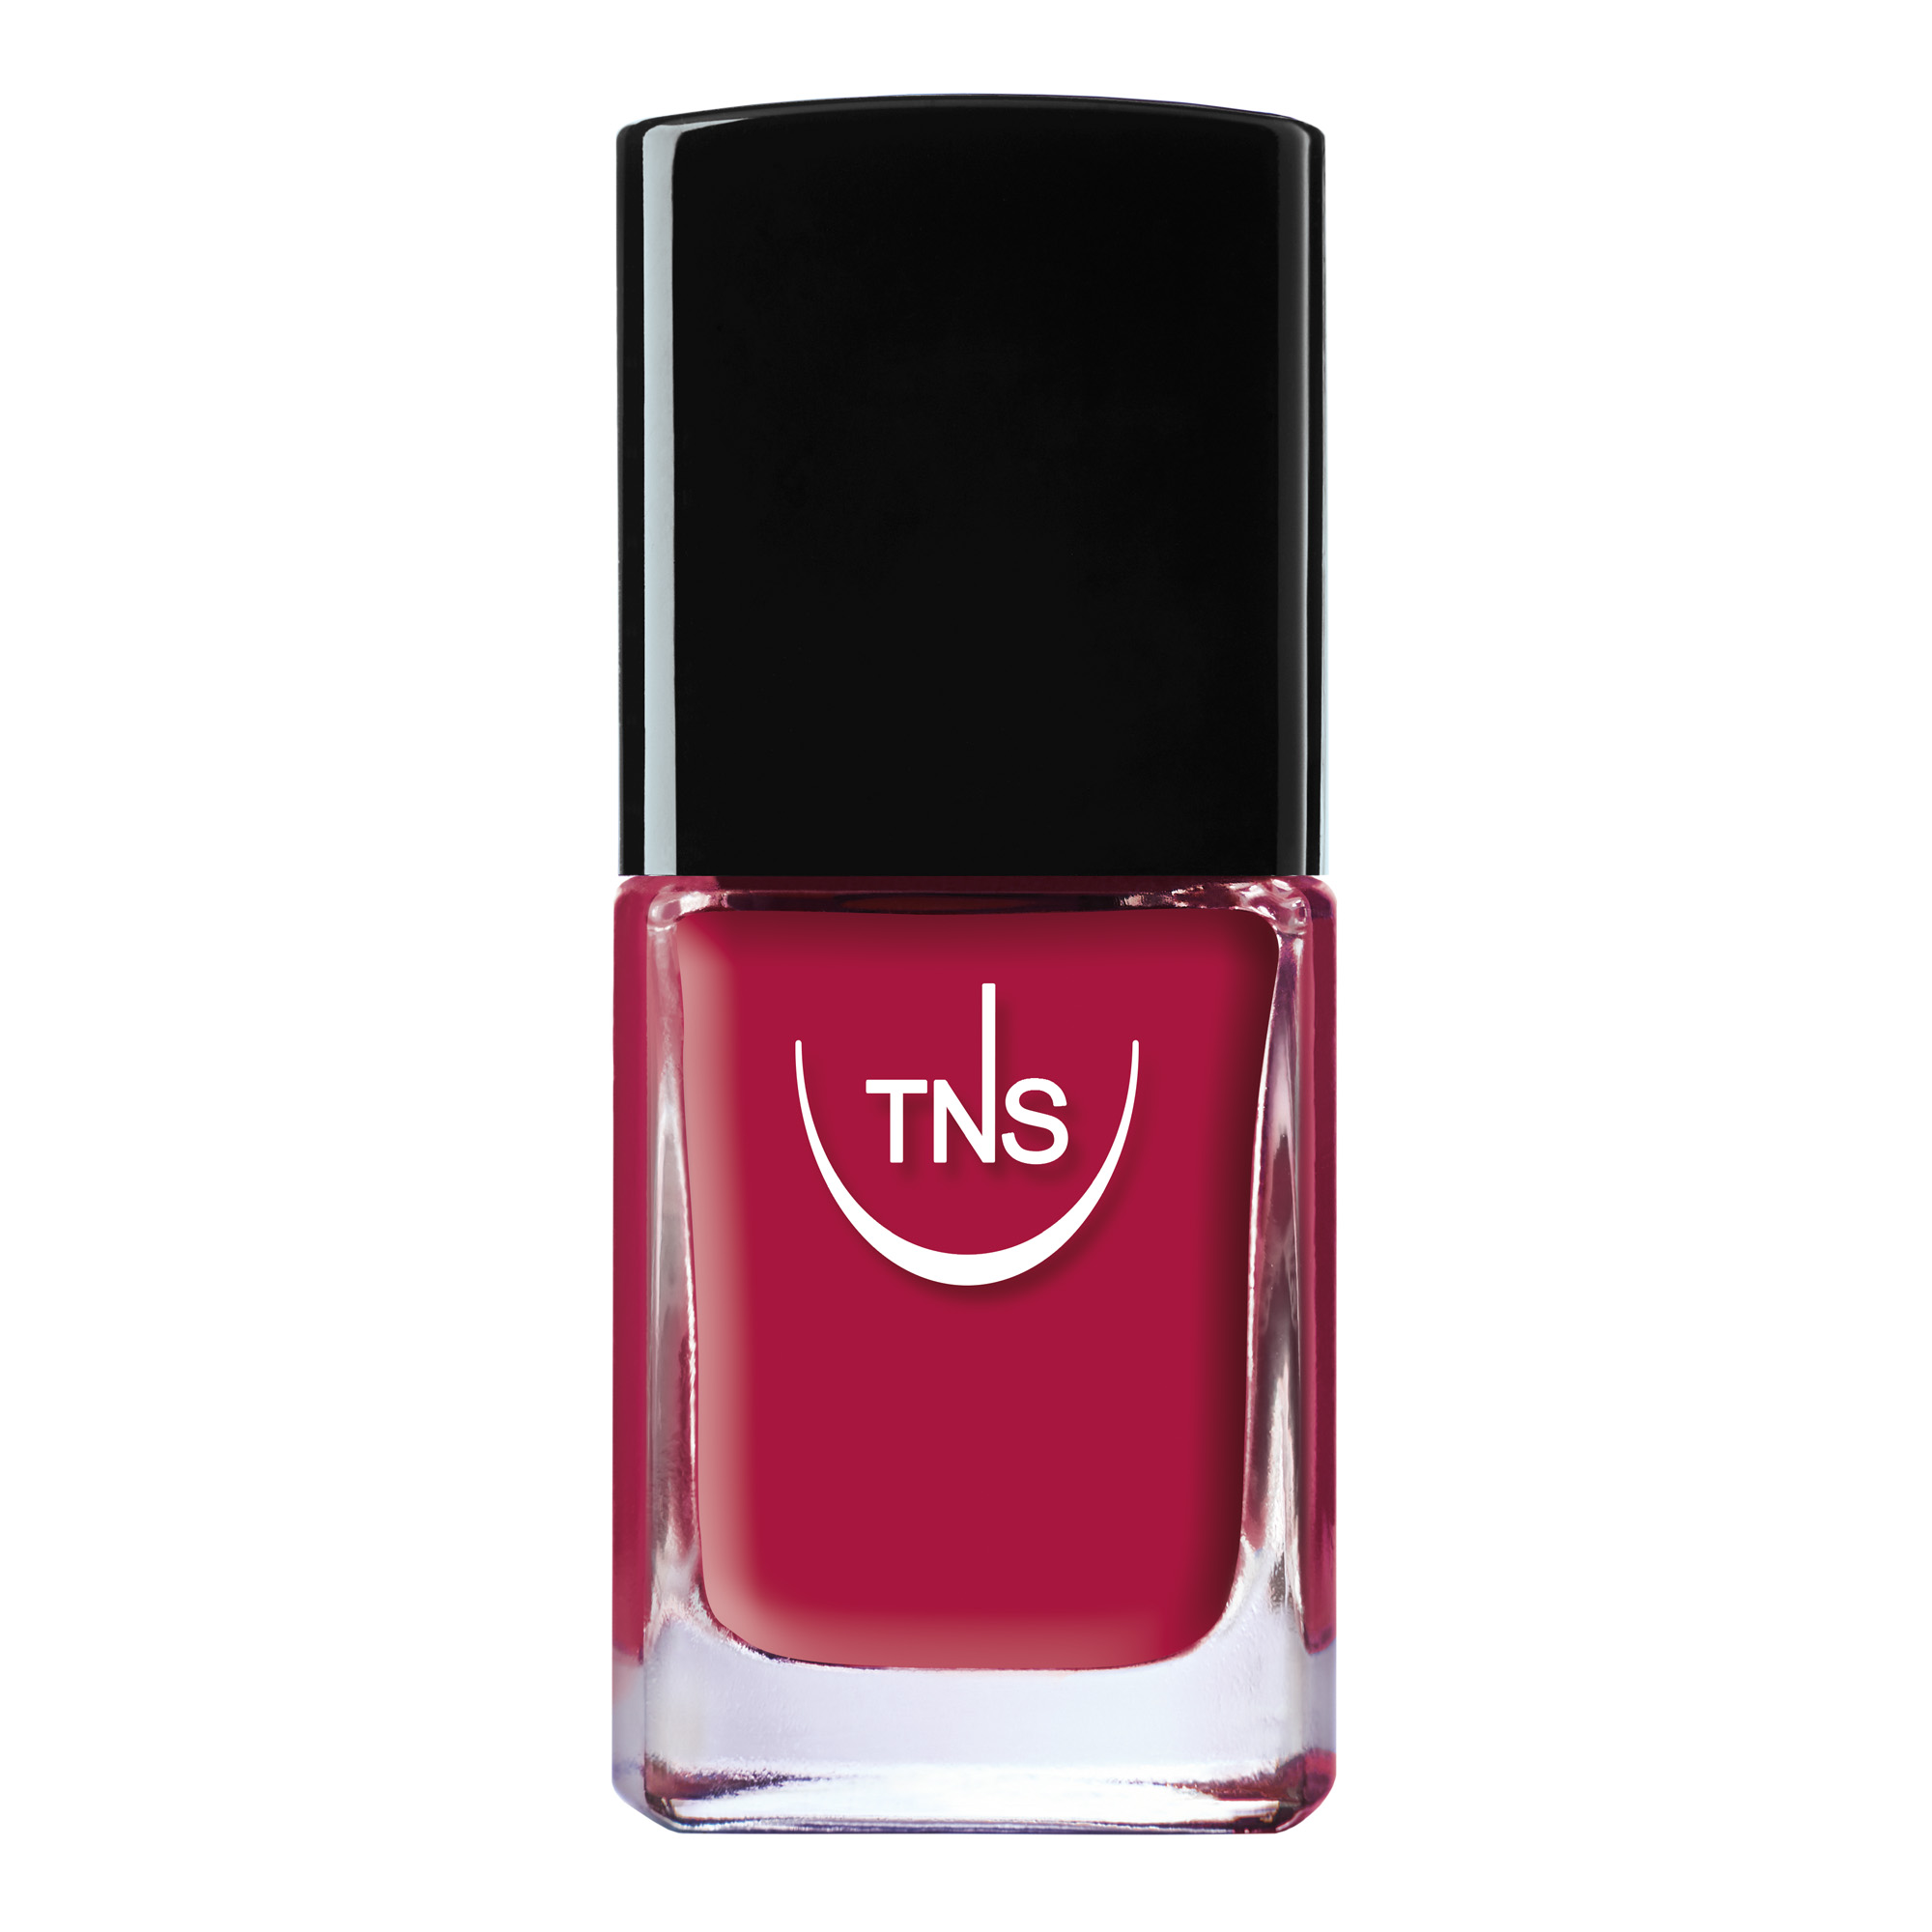 Nail polish Sea Star Blush bright burgundy 10 ml TNS